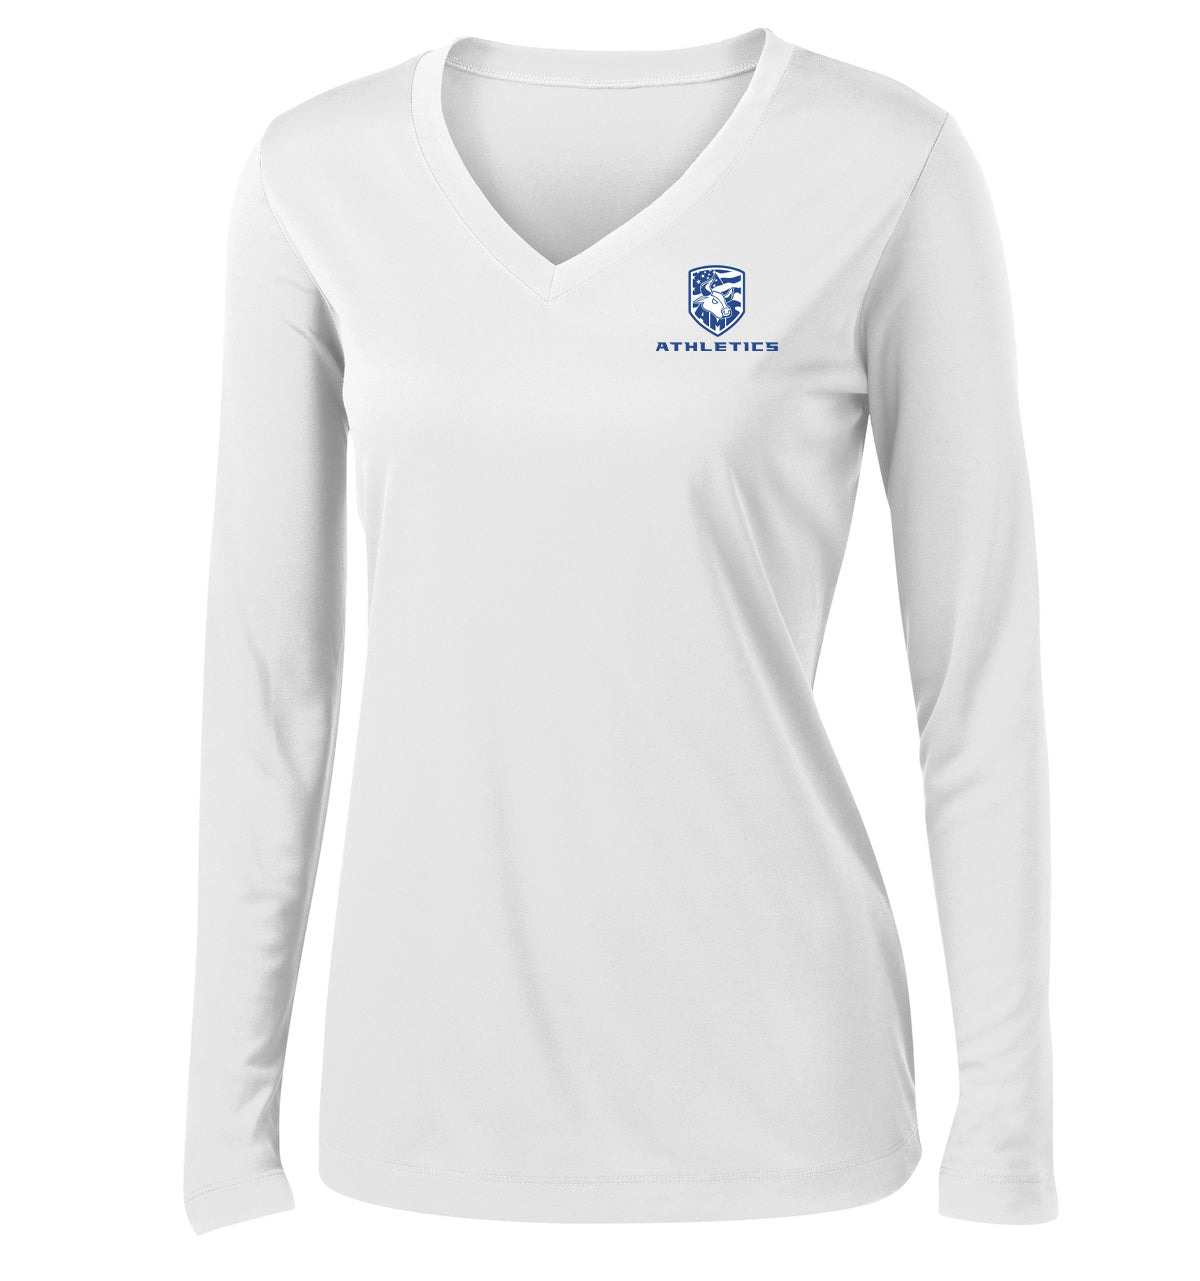 Accompsett Middle School Women's White Long Sleeve Performance Shirt